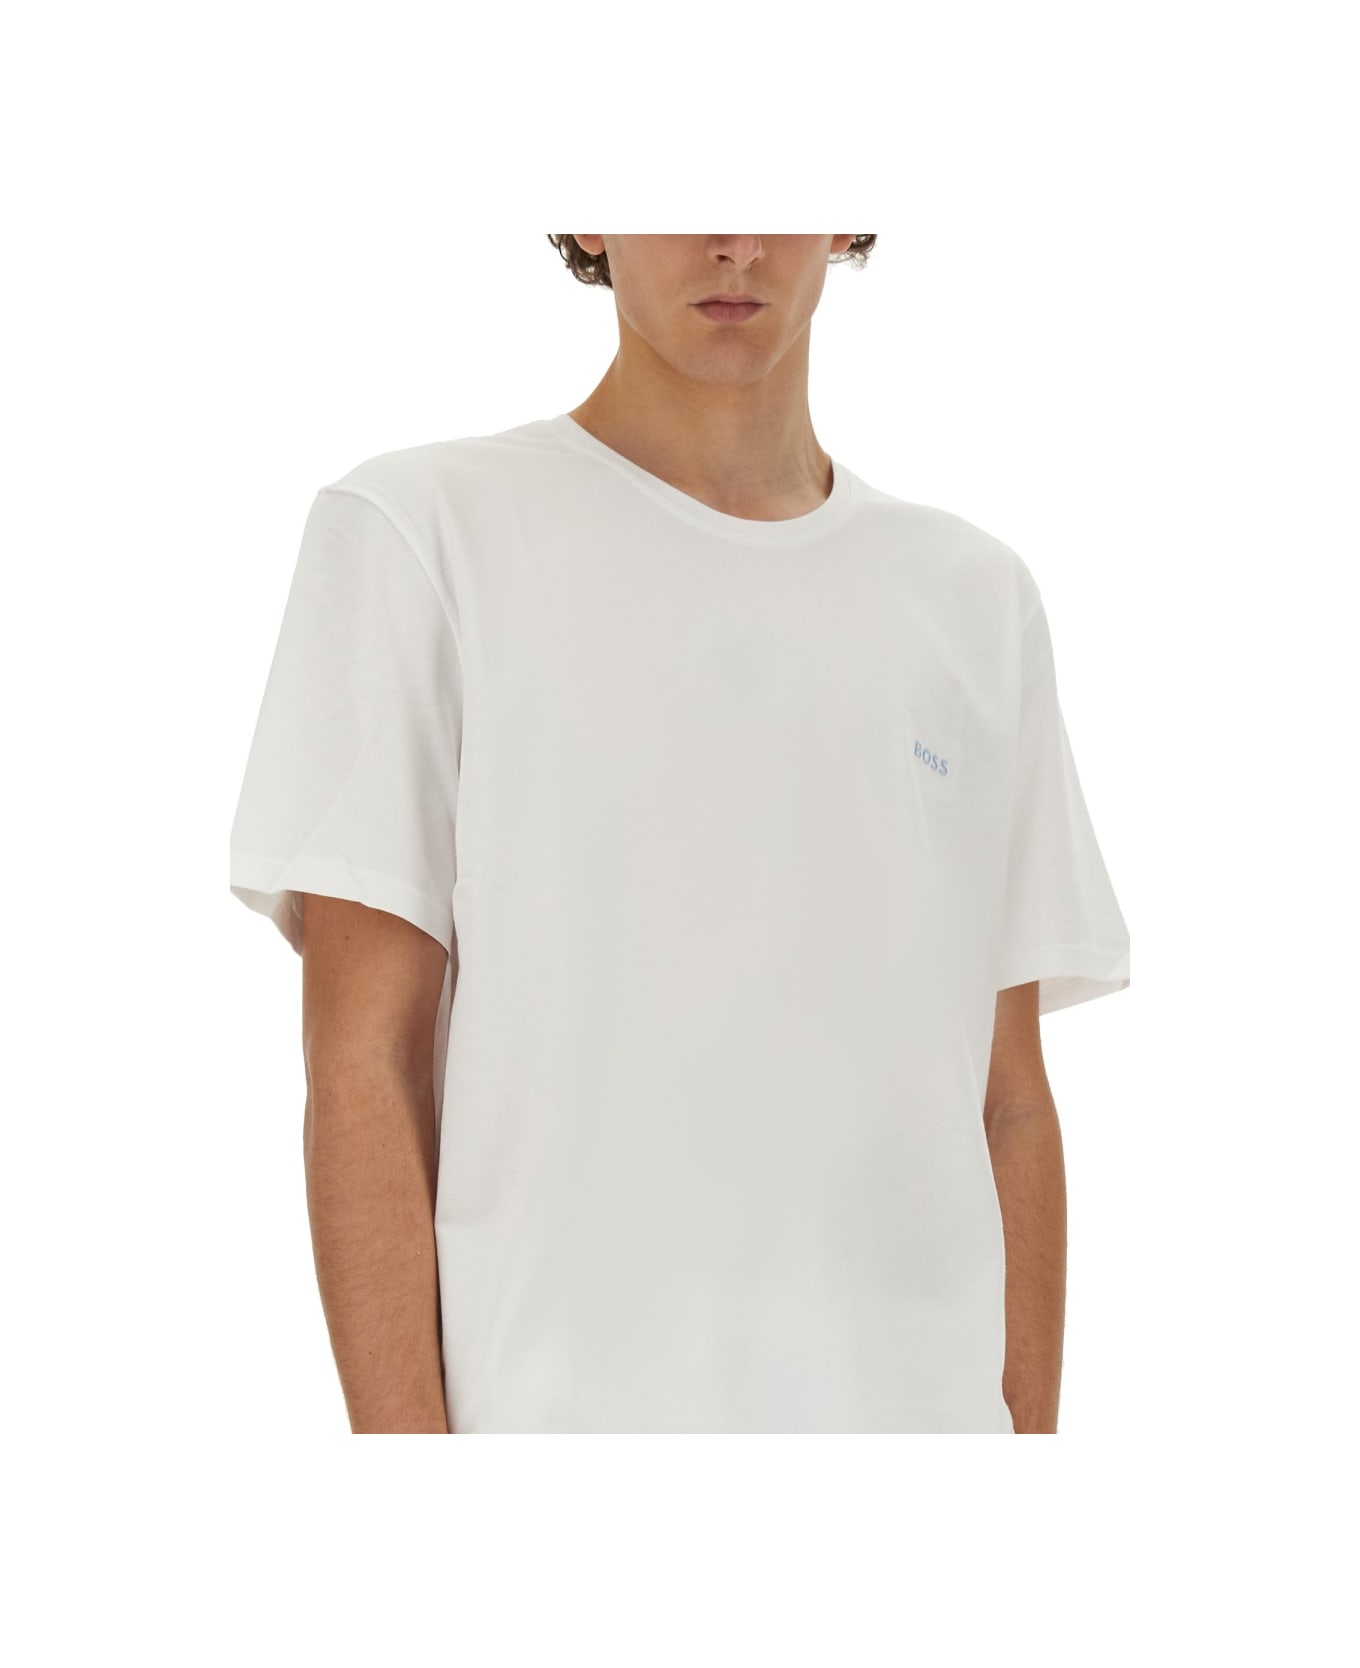 Hugo Boss T-shirt With Logo - WHITE シャツ